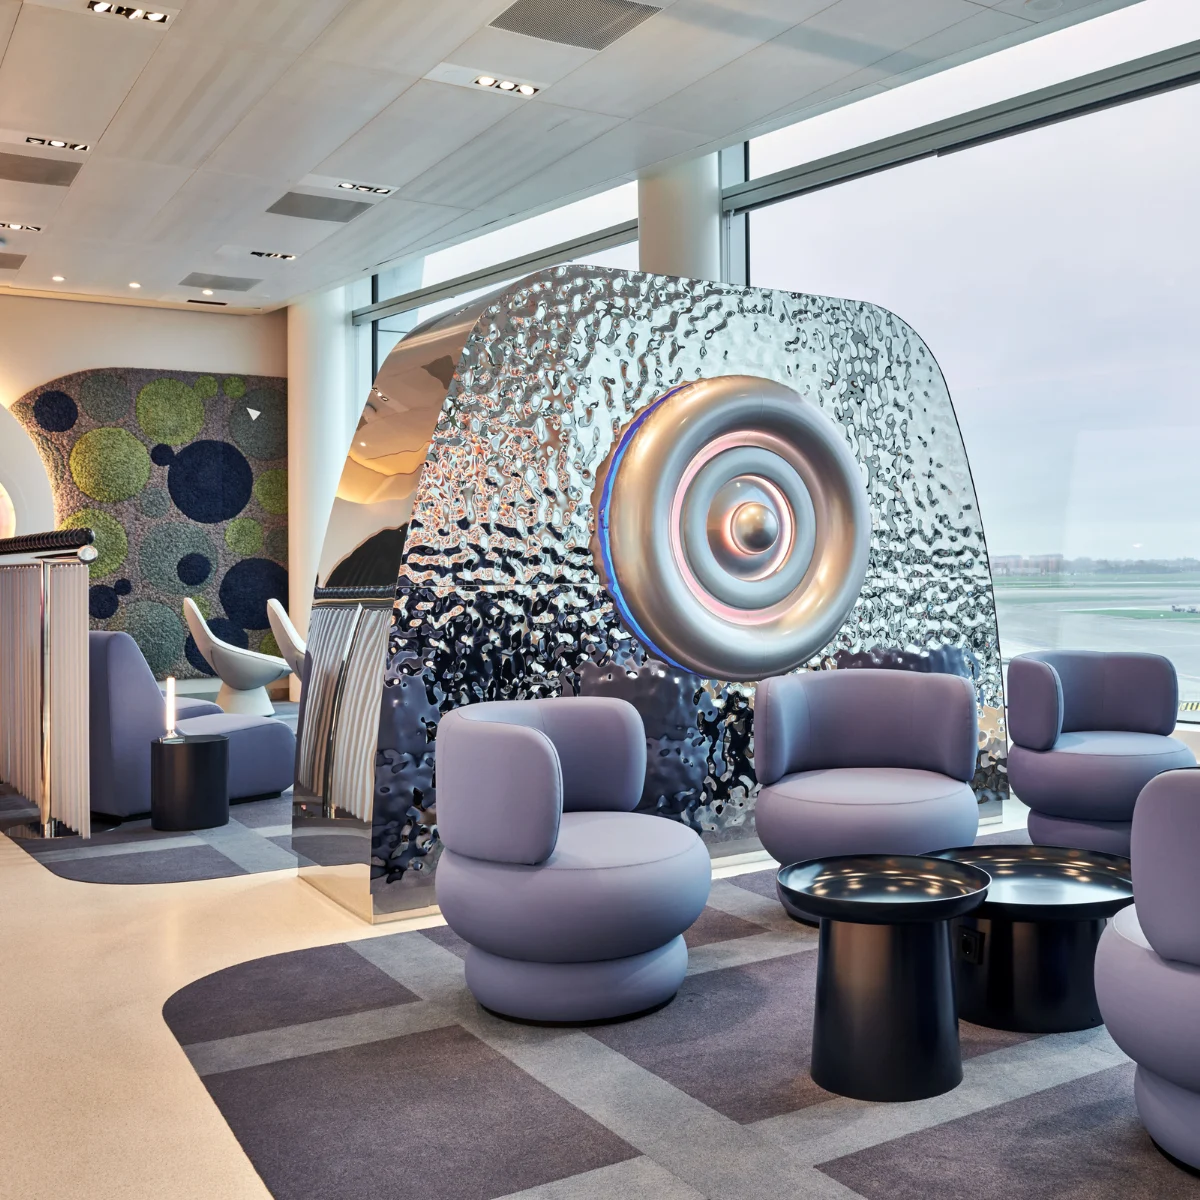 Le salon d’aéroport oneworld d’Amsterdam se pare d’œuvres d’art flamboyantes.